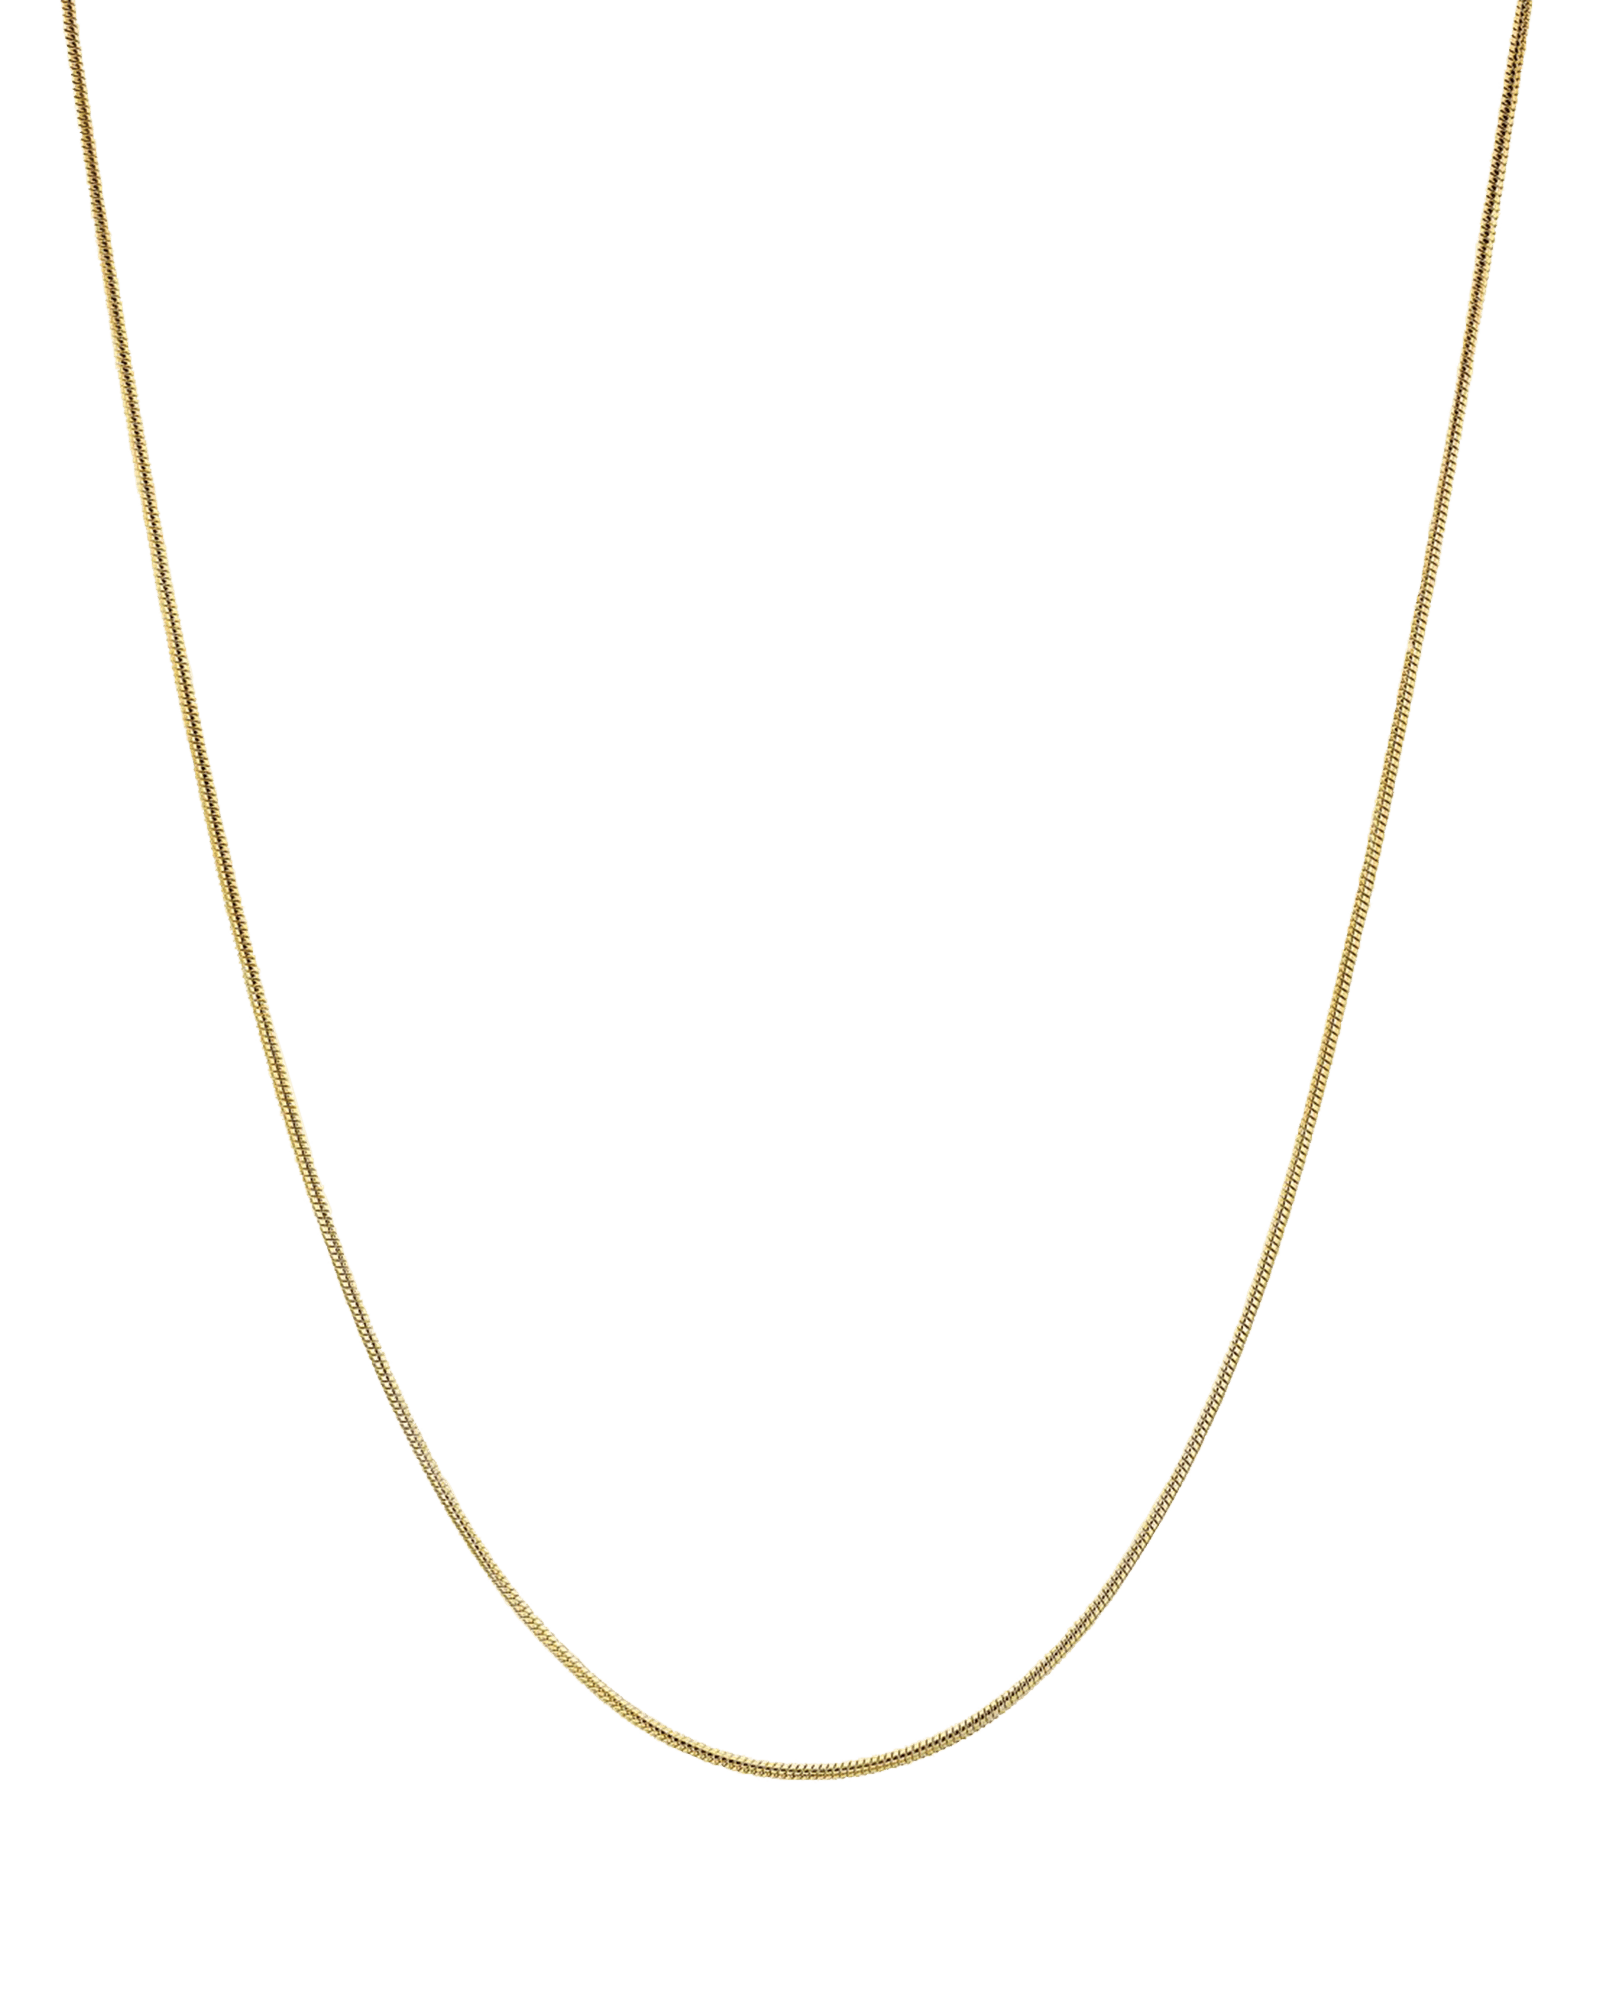 Snake Chain - 18K Gold Vermeil Chains magal-dev 